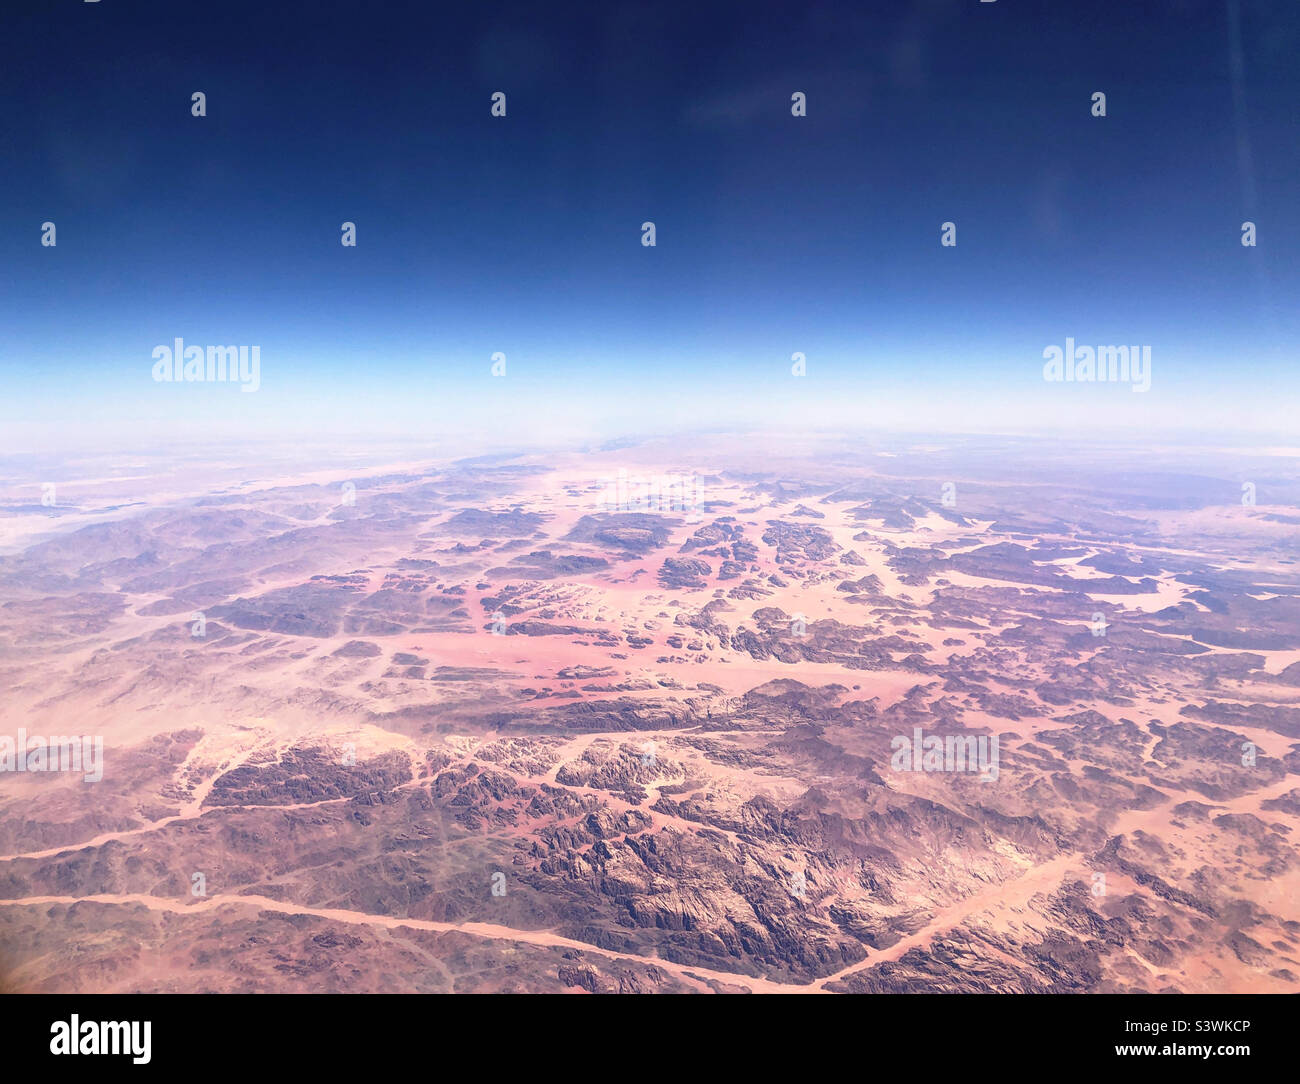 Al-Jawf, Arabia Saudita desde el aire Foto de stock